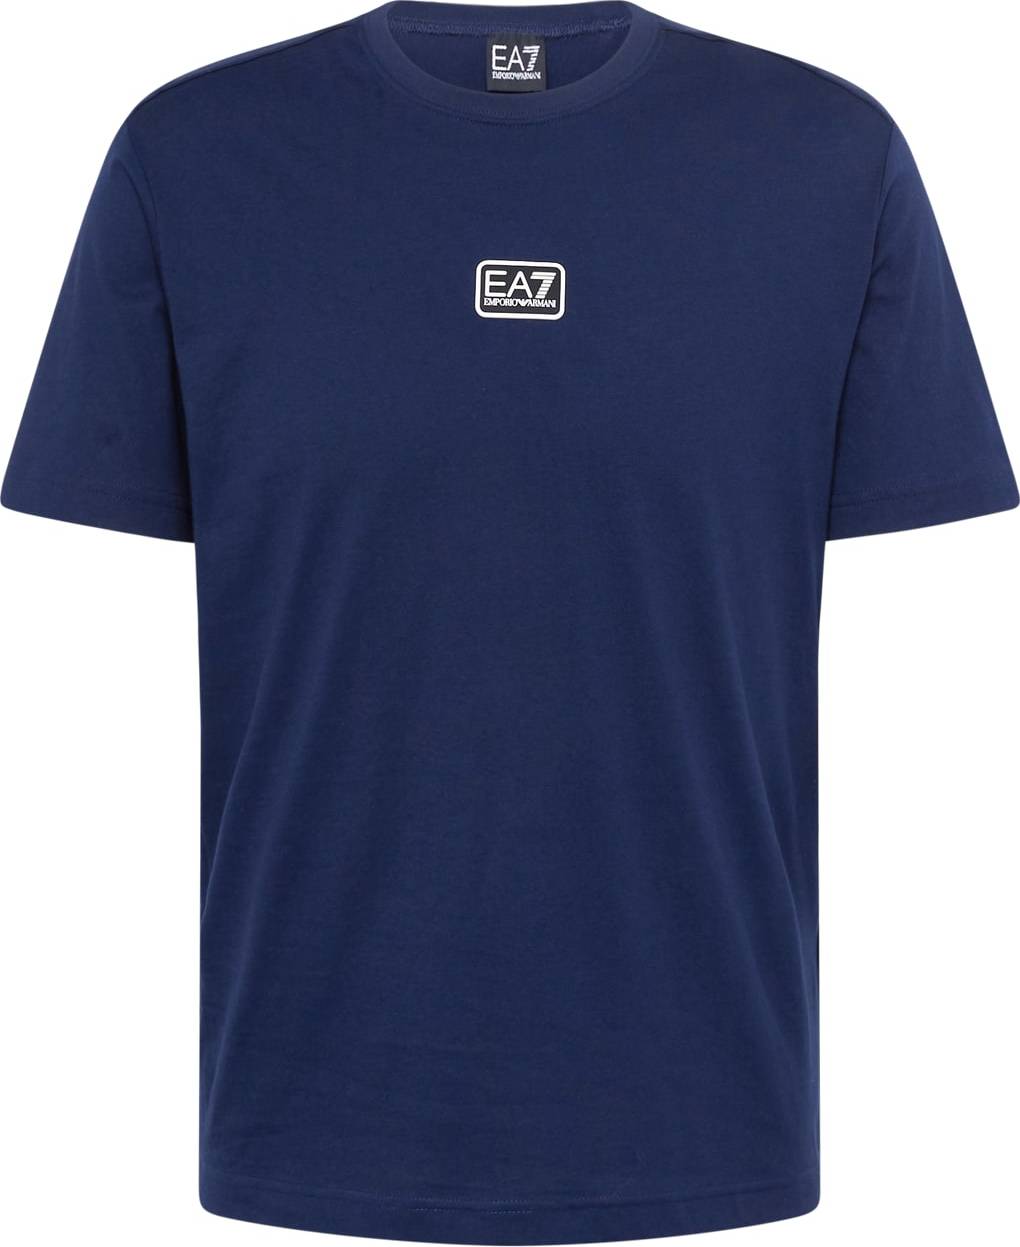 Tričko EA7 Emporio Armani námořnická modř / bílá